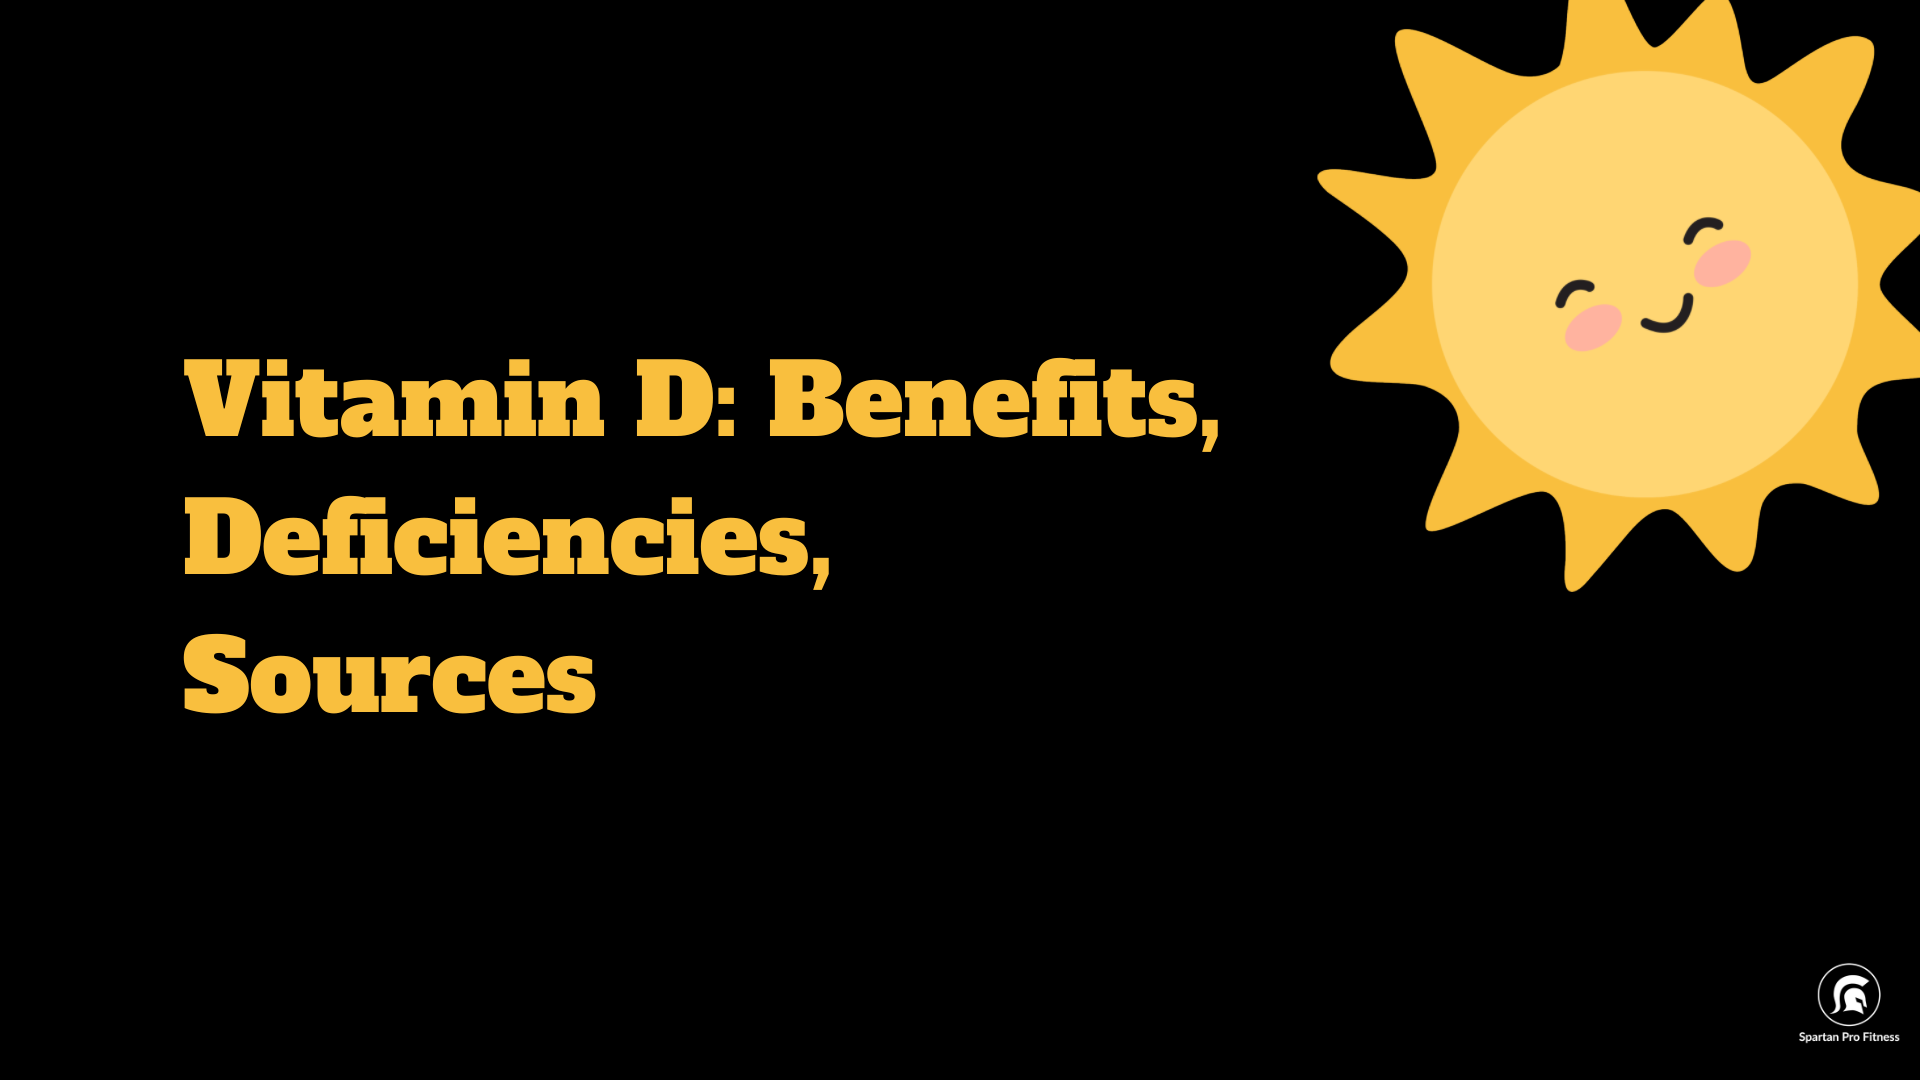 Vitamin D: Benefits, Deficiencies, Sources